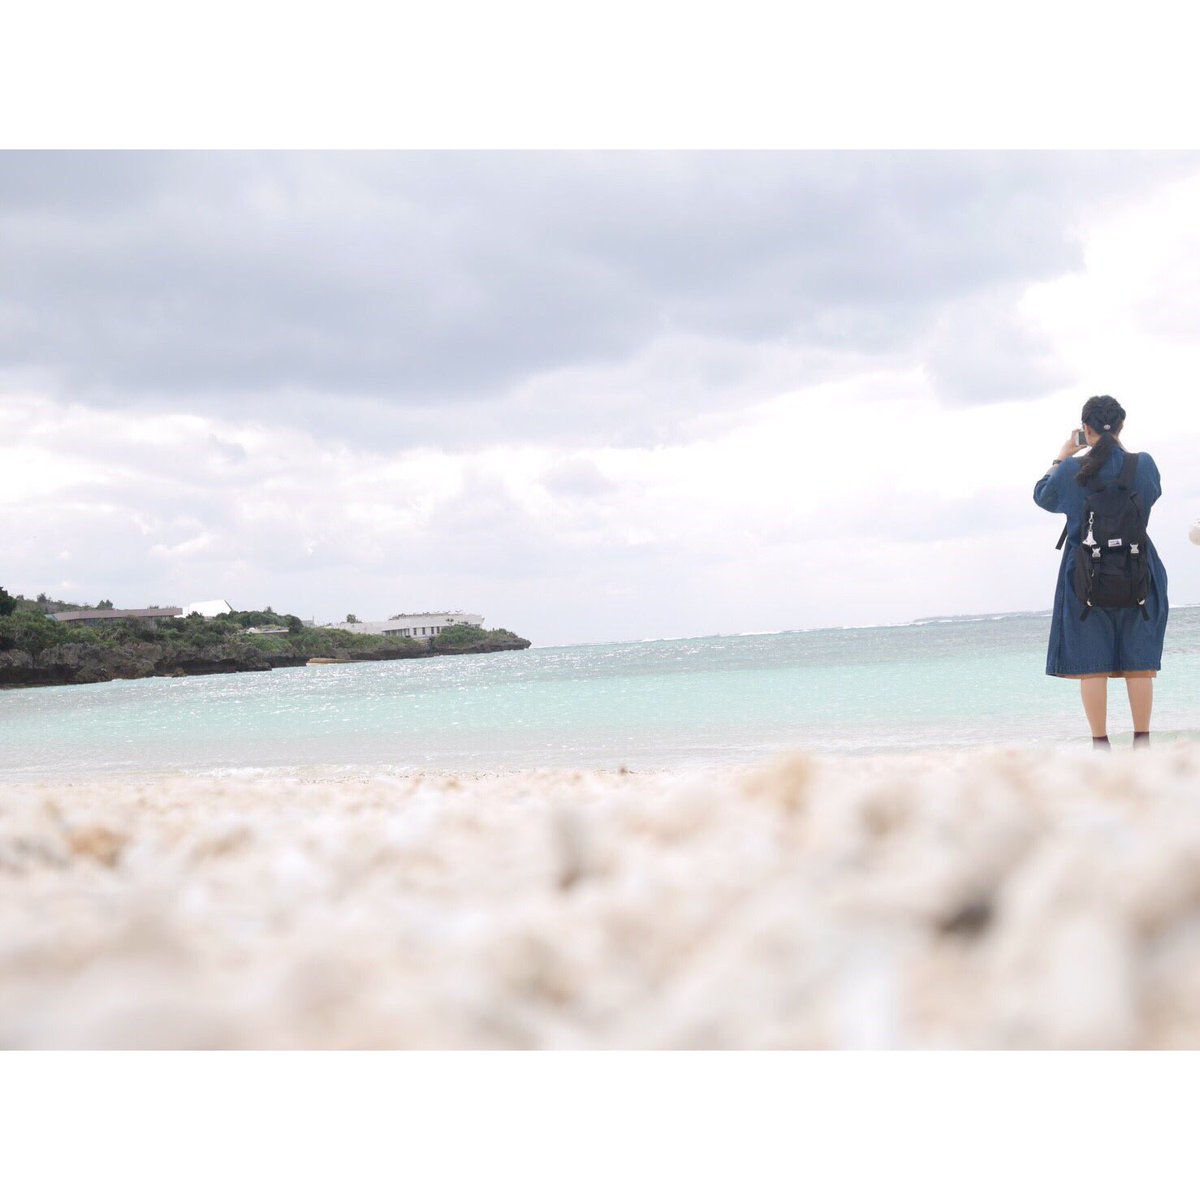 おゆず 写真 海を撮る私を撮る友達 写真で伝えたい私の世界 ファインダー越しの私の世界 写真好きな人と繋がりたい 写真撮っている人と繋がりたい お洒落さんと繋がりたい Okinawa 沖縄 おゆず写真集 Beautifulworld T Co